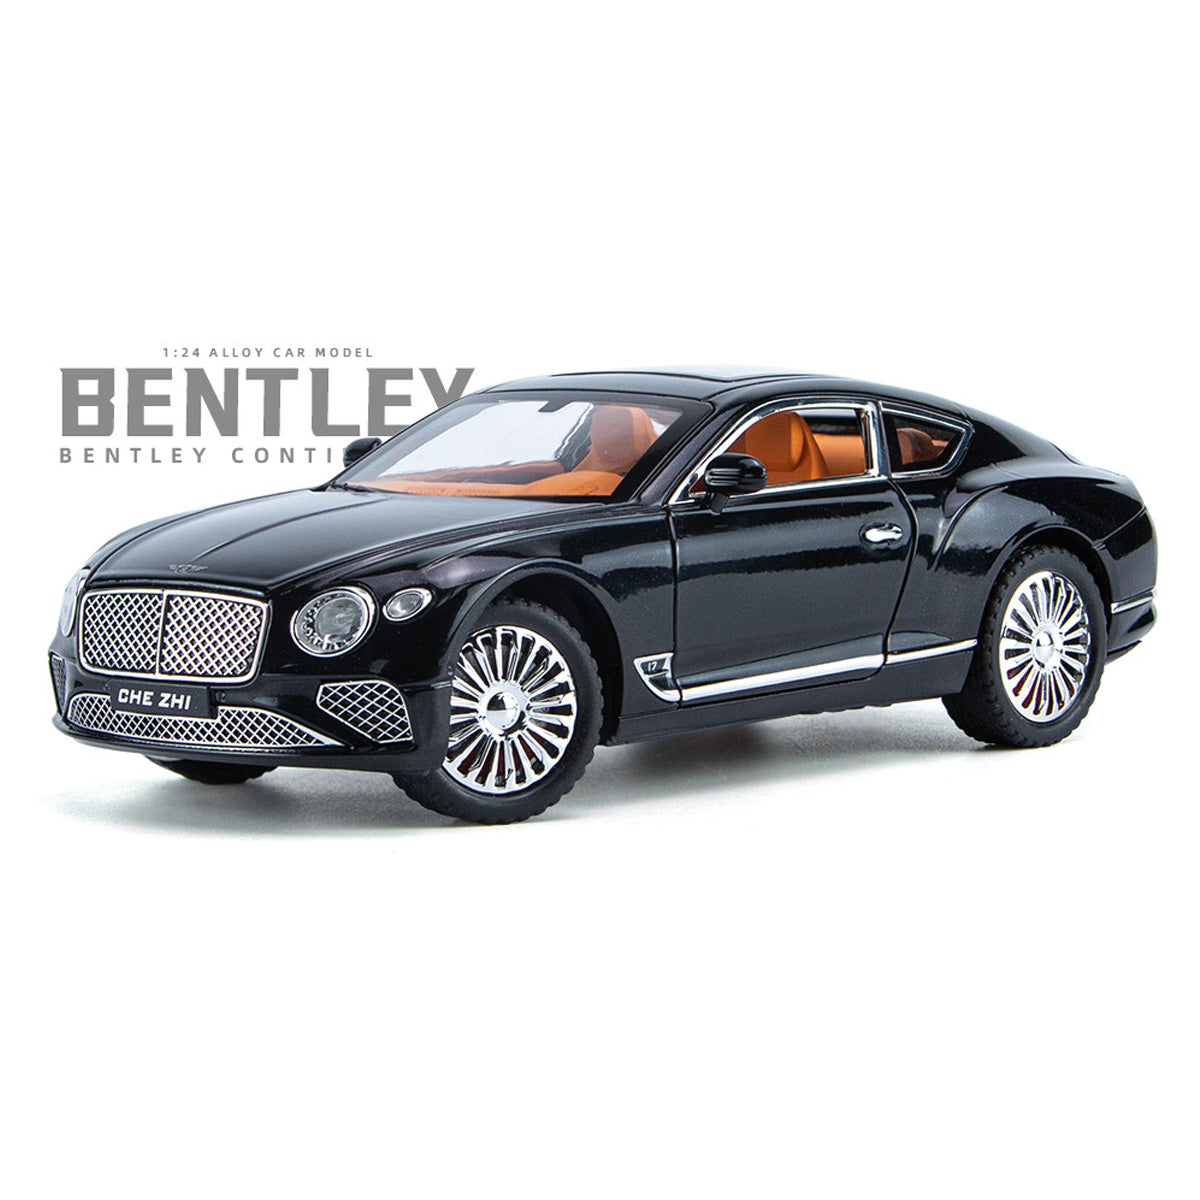 NIKOLATOY Alloy 1/24 Bentley Continental Model Car